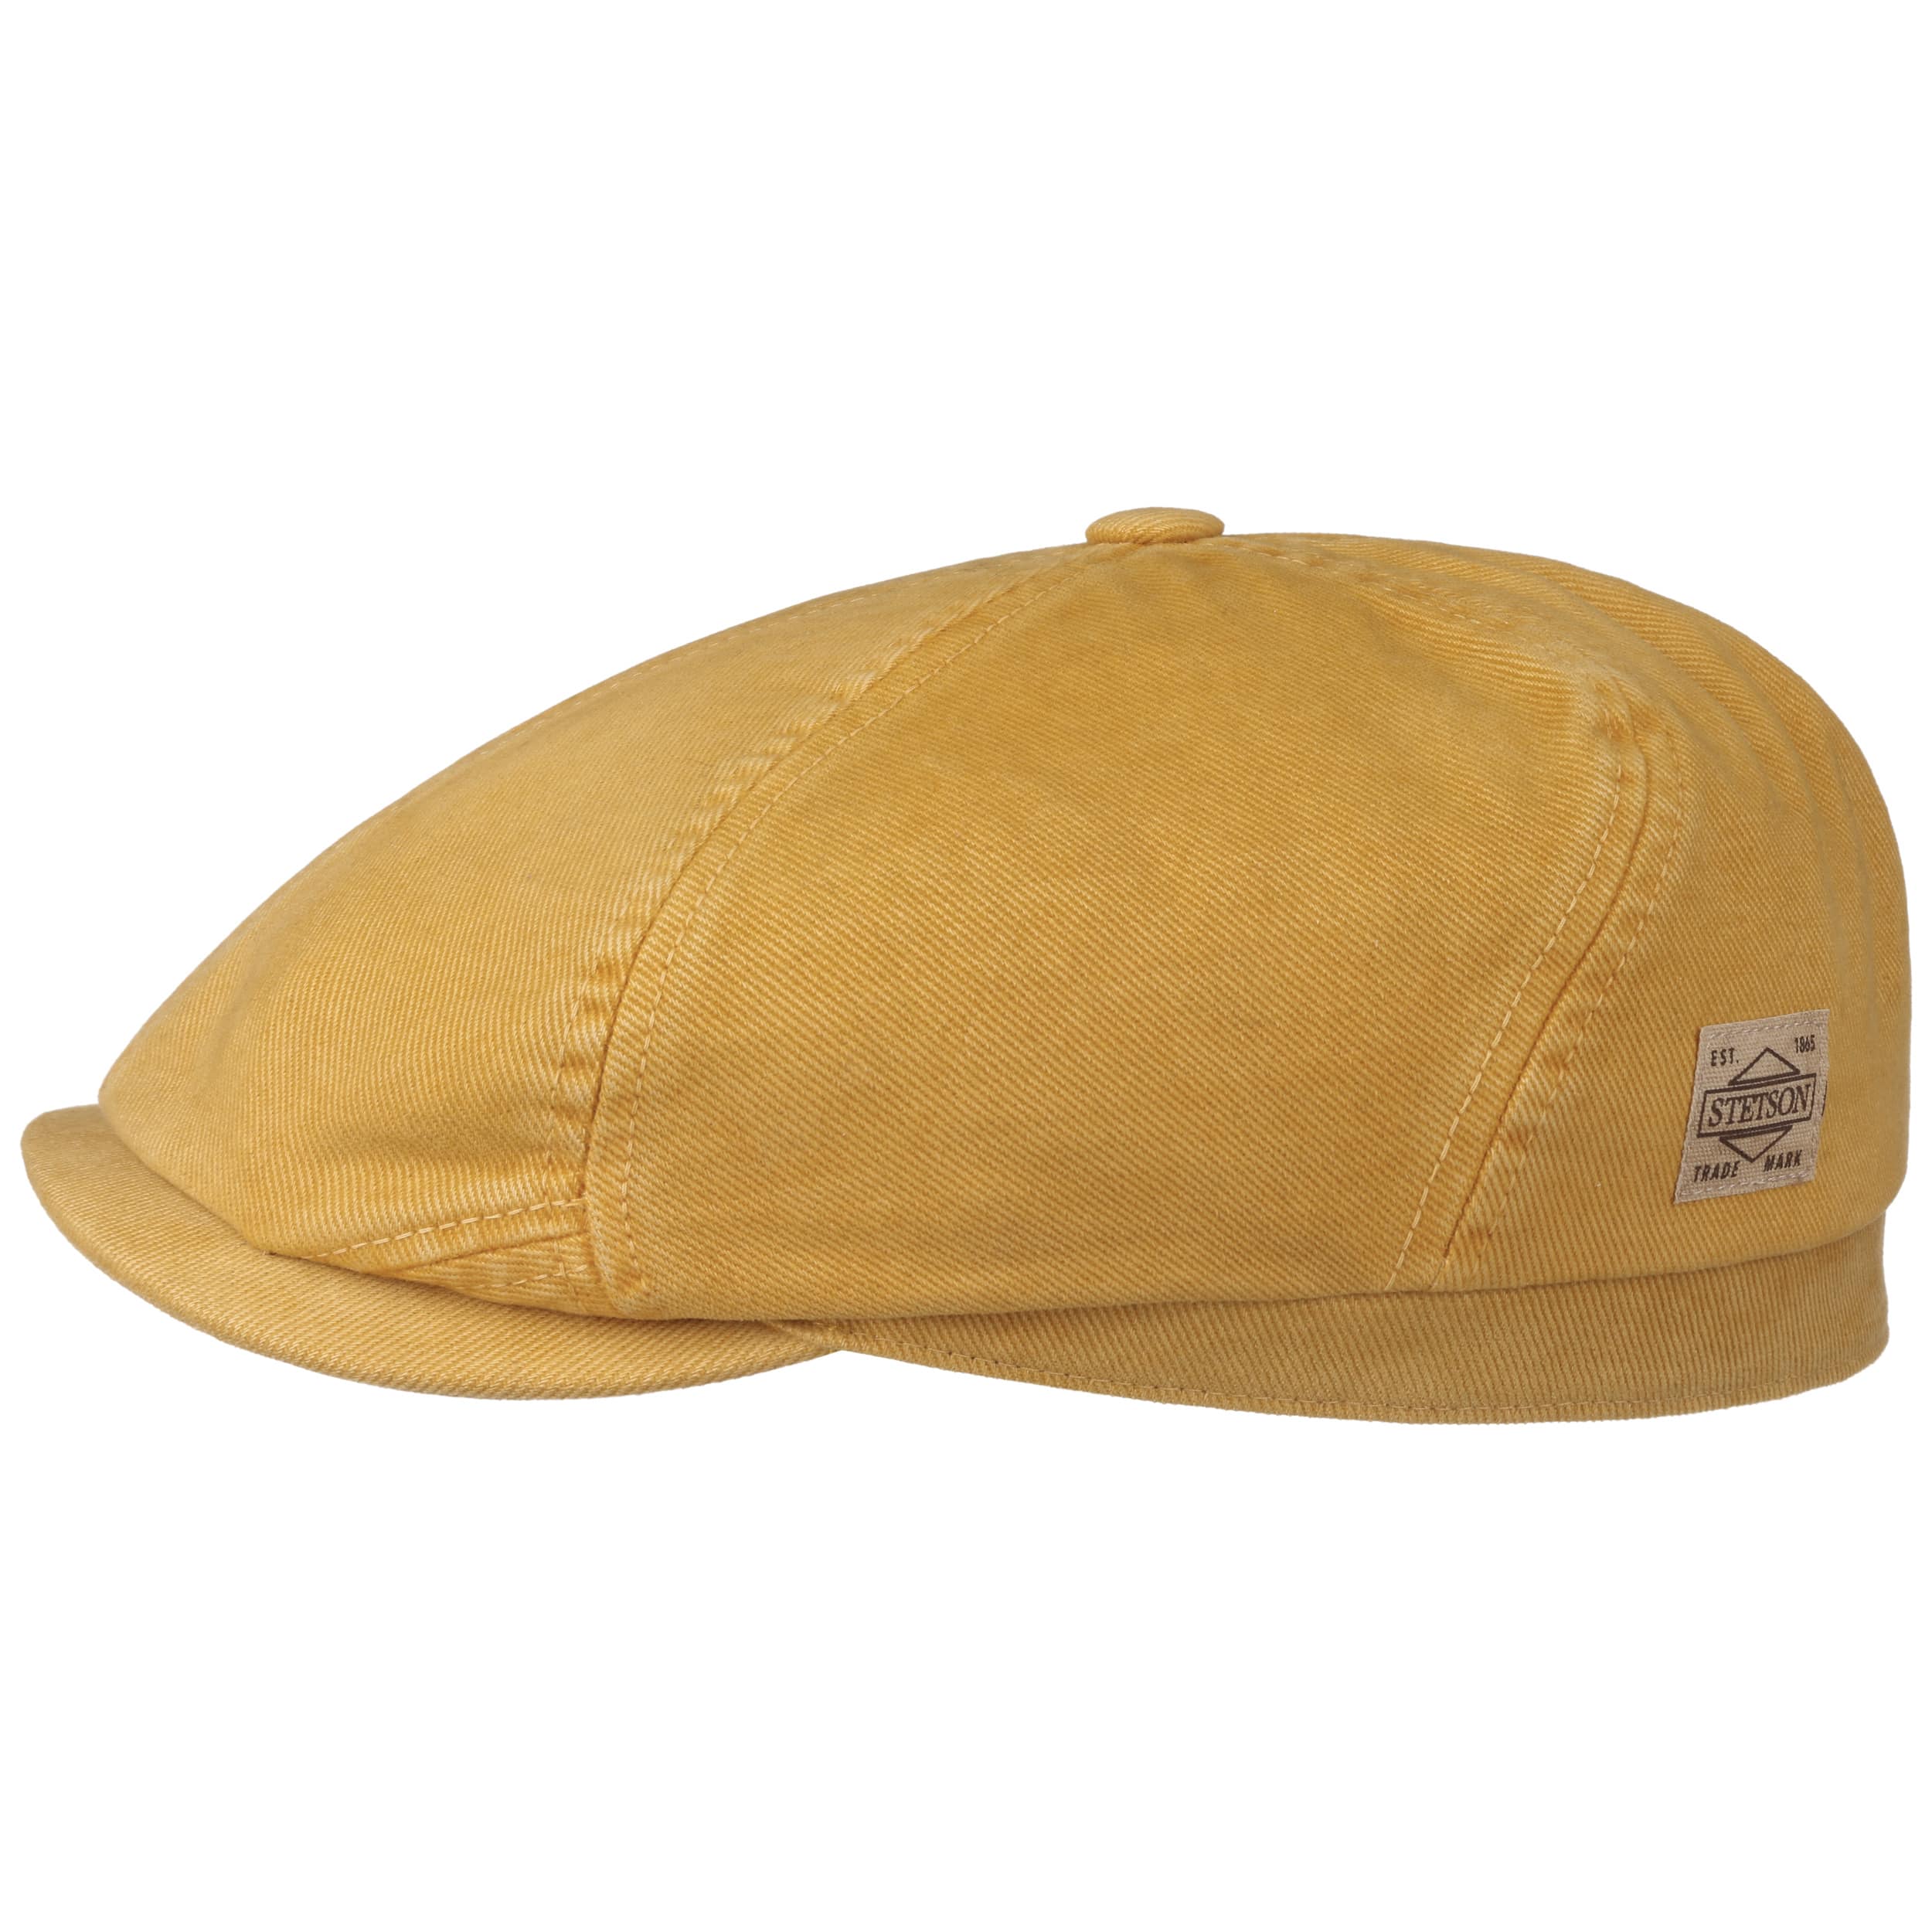 特価注文Ovy Cotton 6Panel Snapback Cap navy 帽子